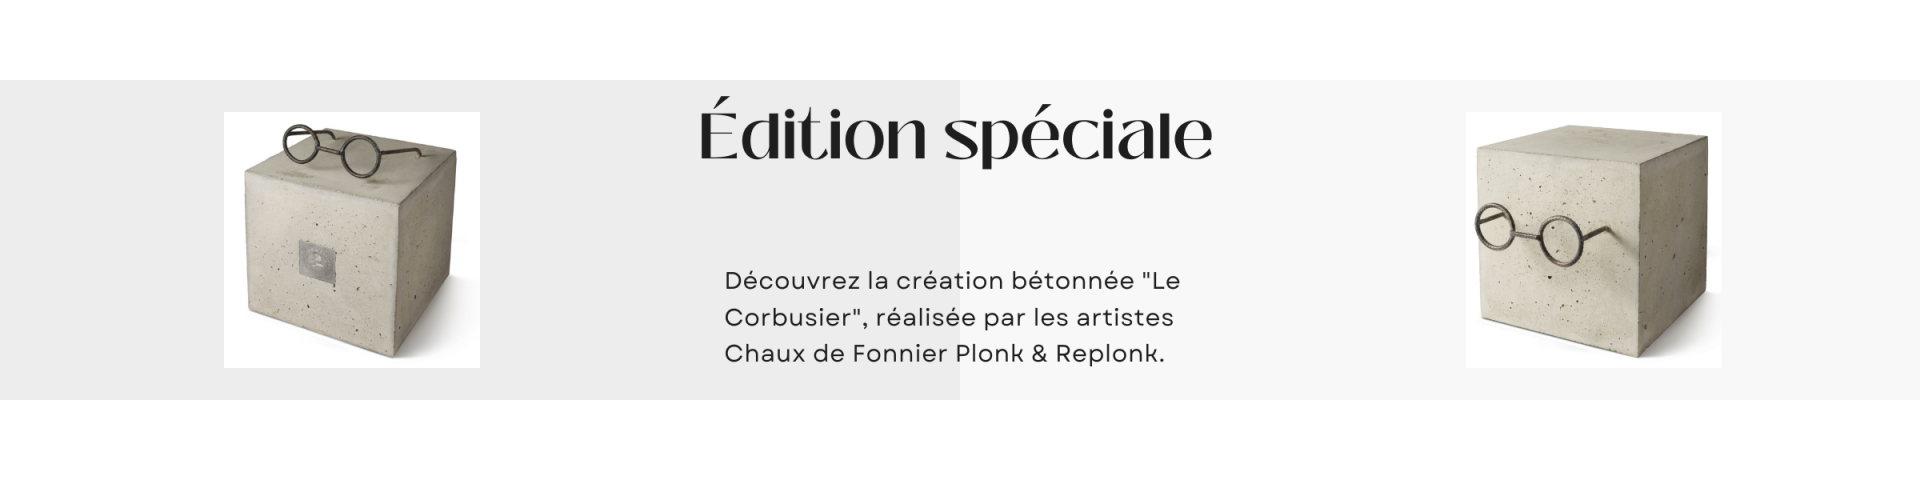 Cube édition "Le Corbusier"